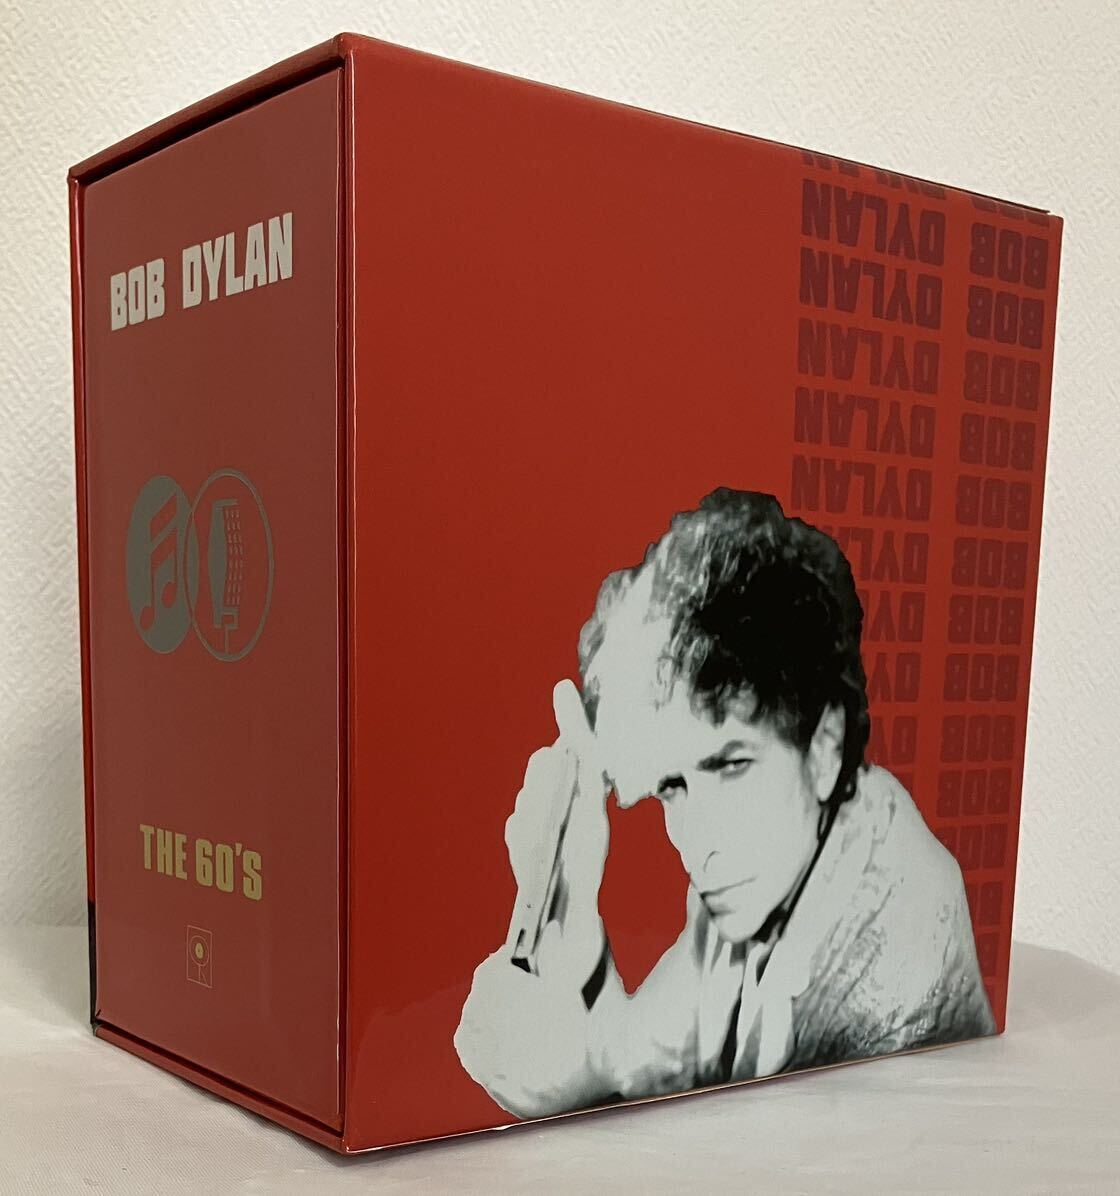 BOB DYLAN 60’s 紙ジャケット全10タイトル購入者特典「 ディラン 60's スペシャル ボックス 」_画像2